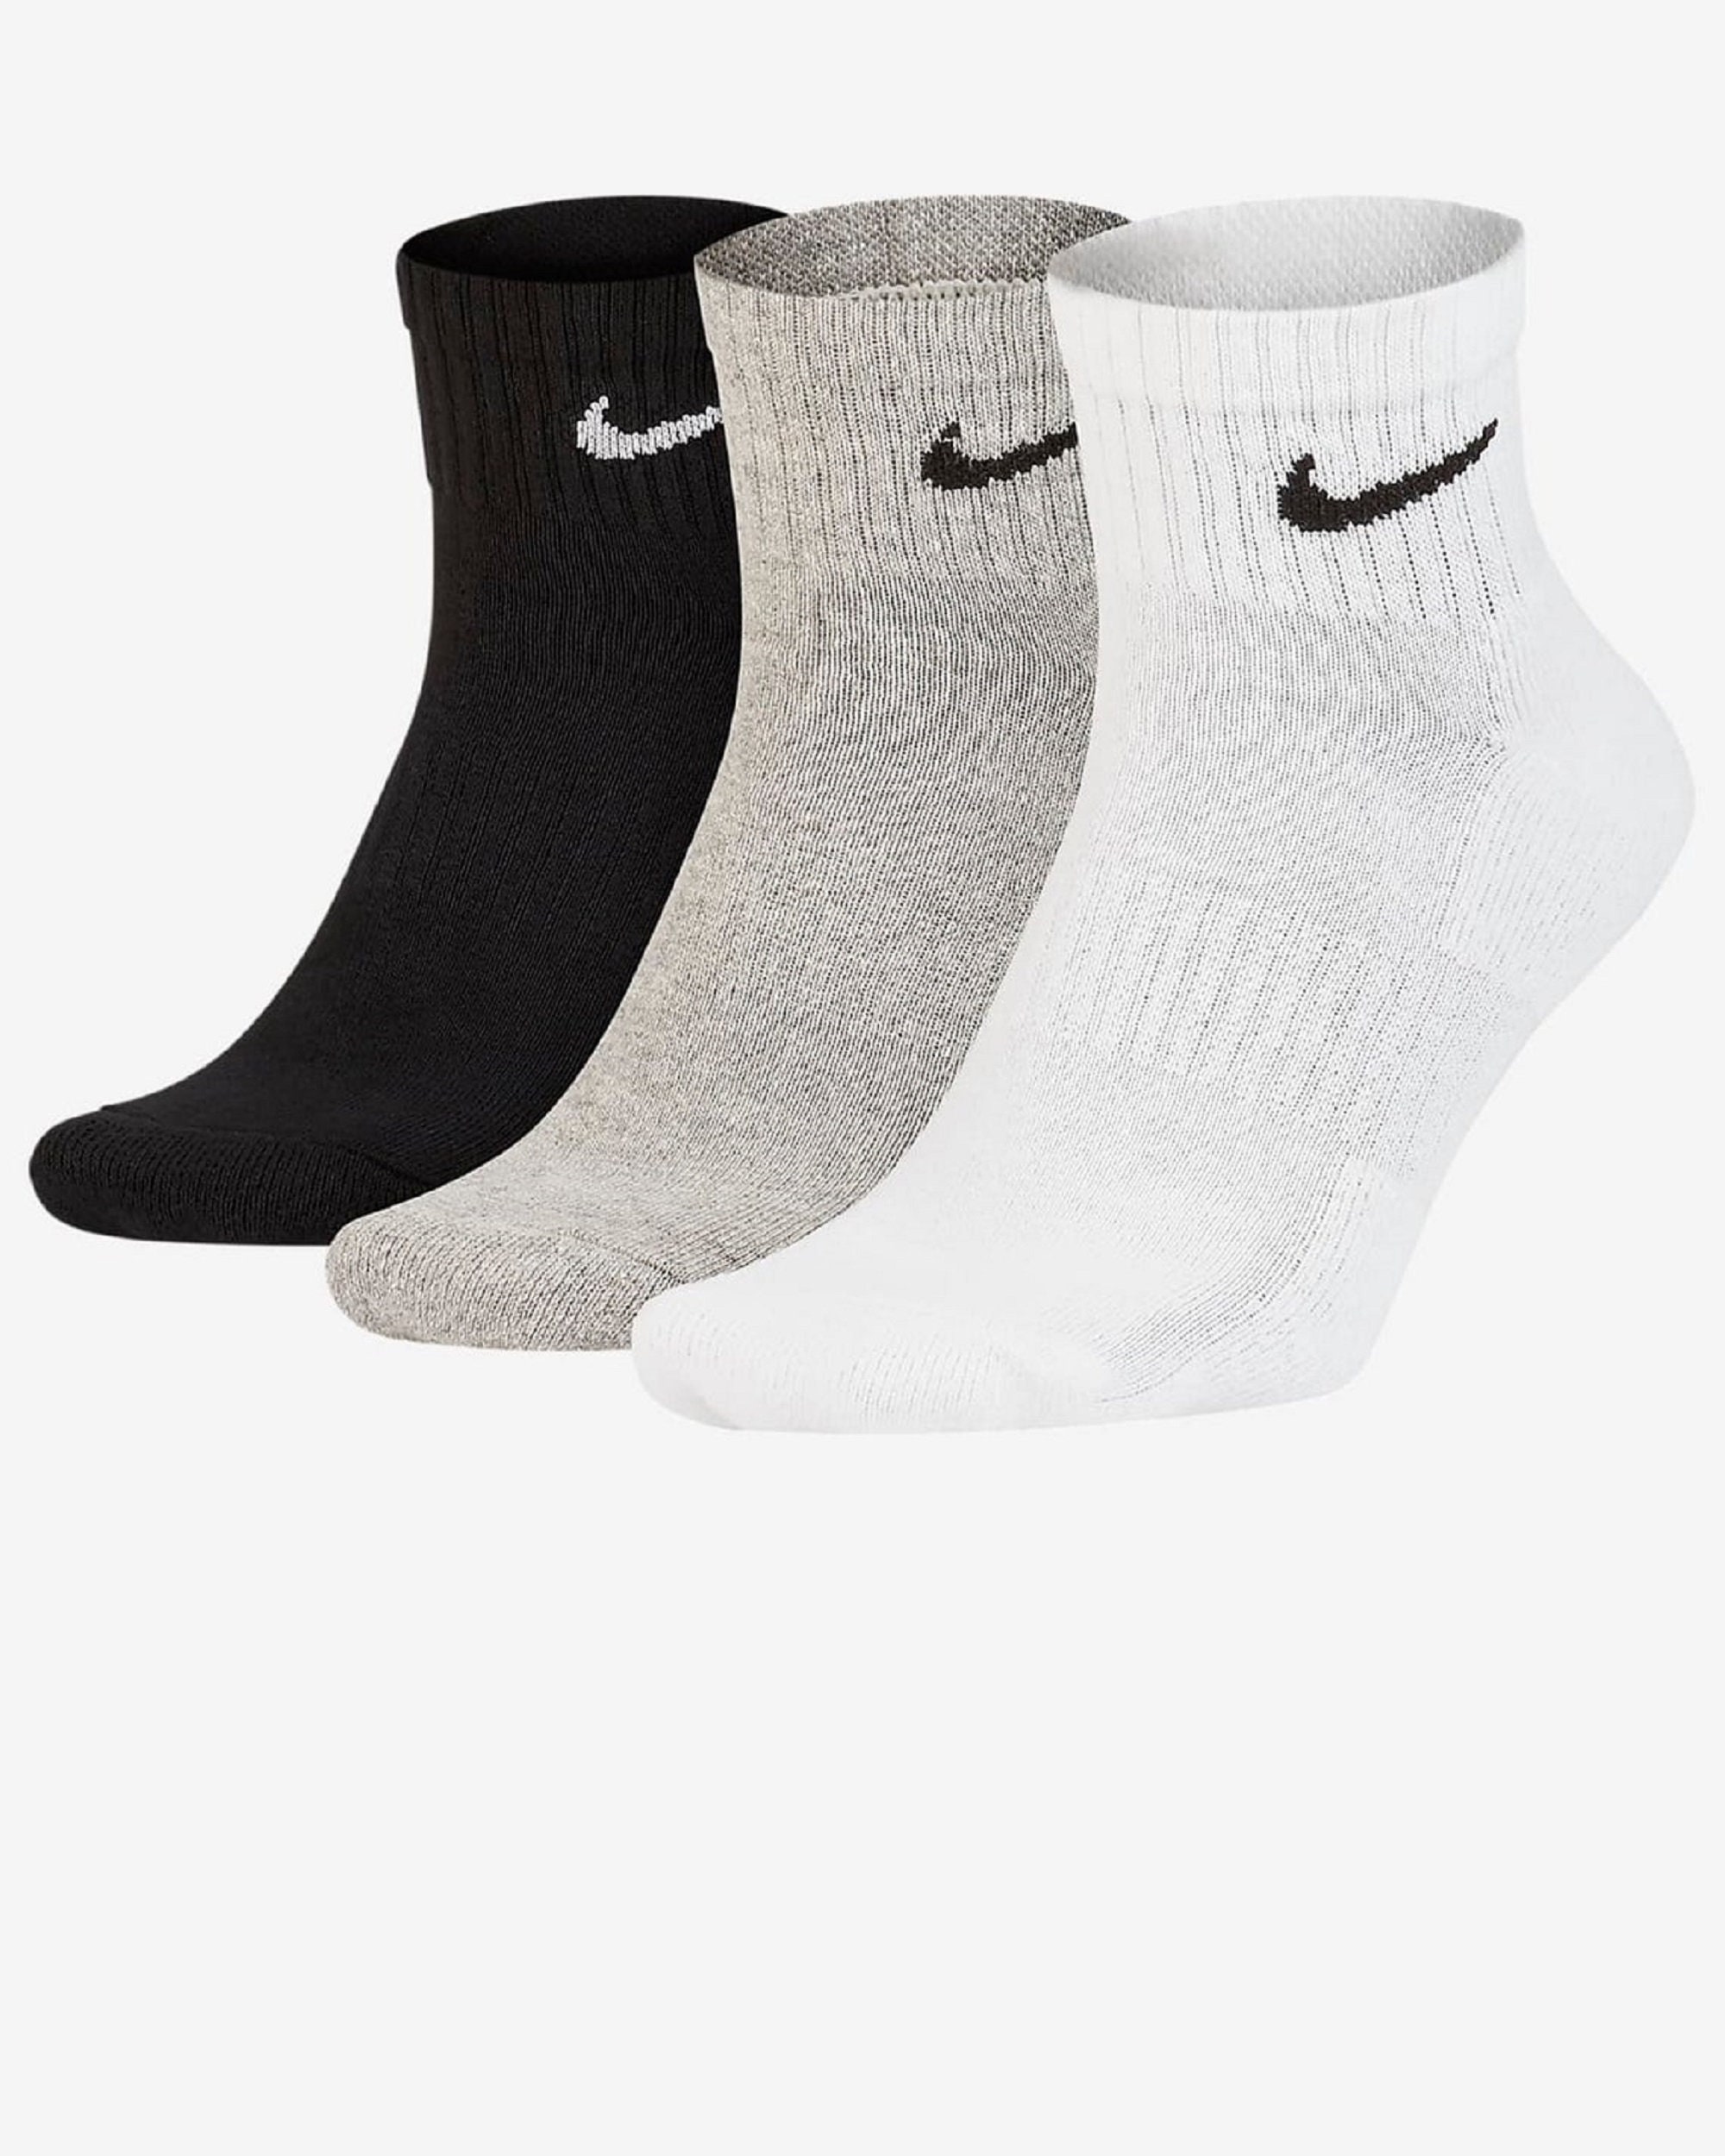 Men Nike Sockshandmade Ankle Length Sockssport Socksrunning | Etsy Canada